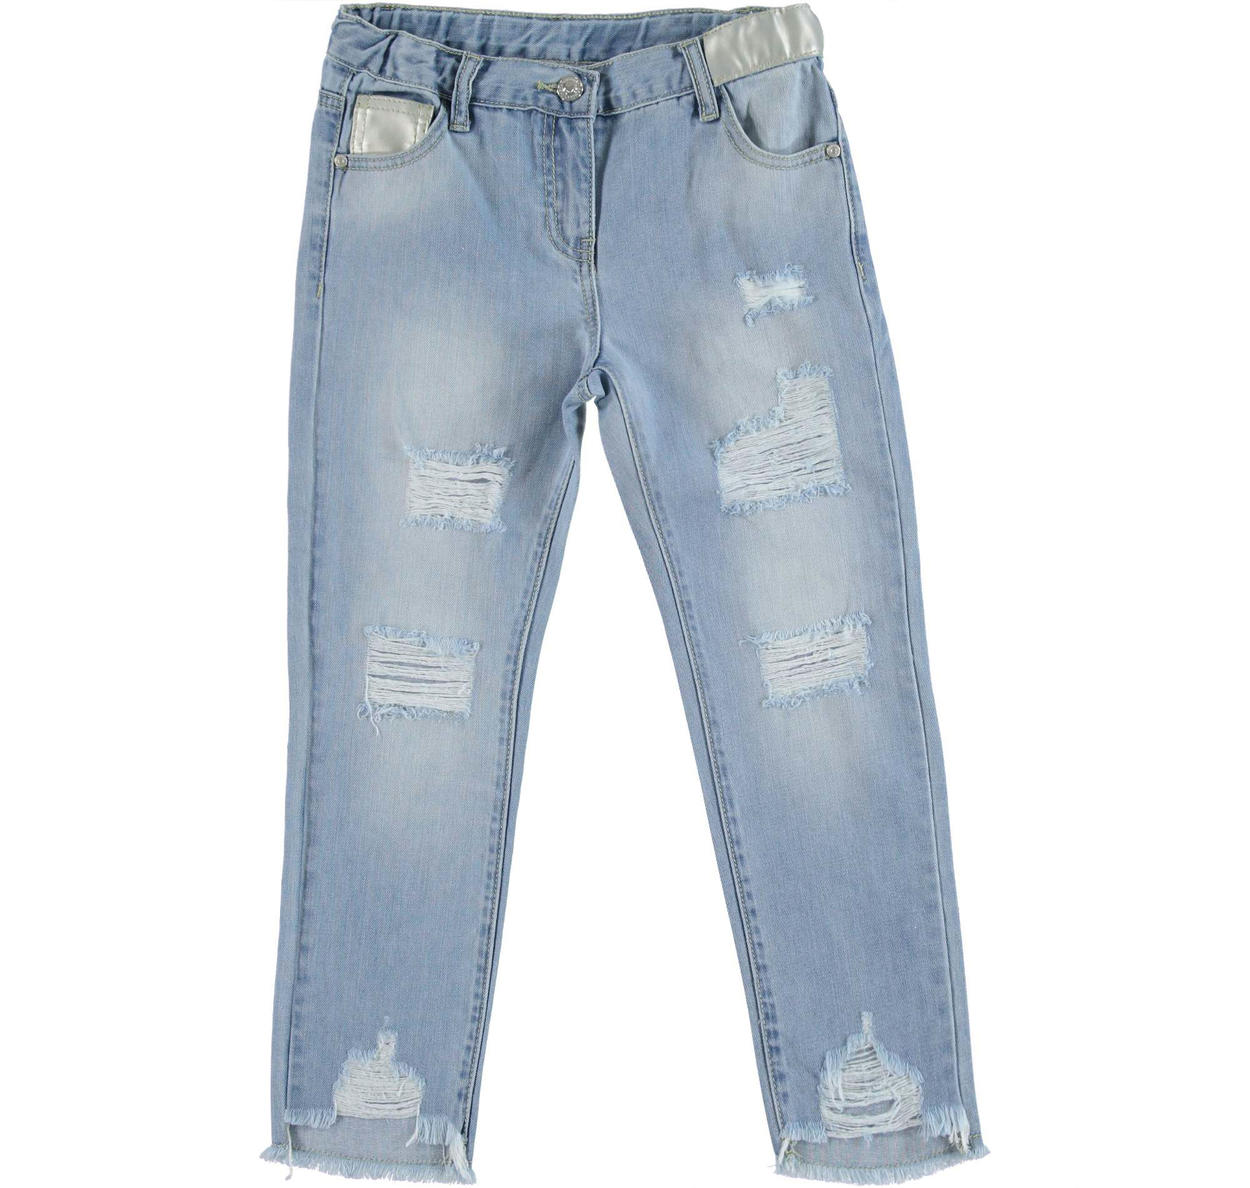 KIDSCOOL SPACE Jeans Ricamati da Bambina,Pantaloni con Fondo in Denim Elasticizzato in Vita da Bambina